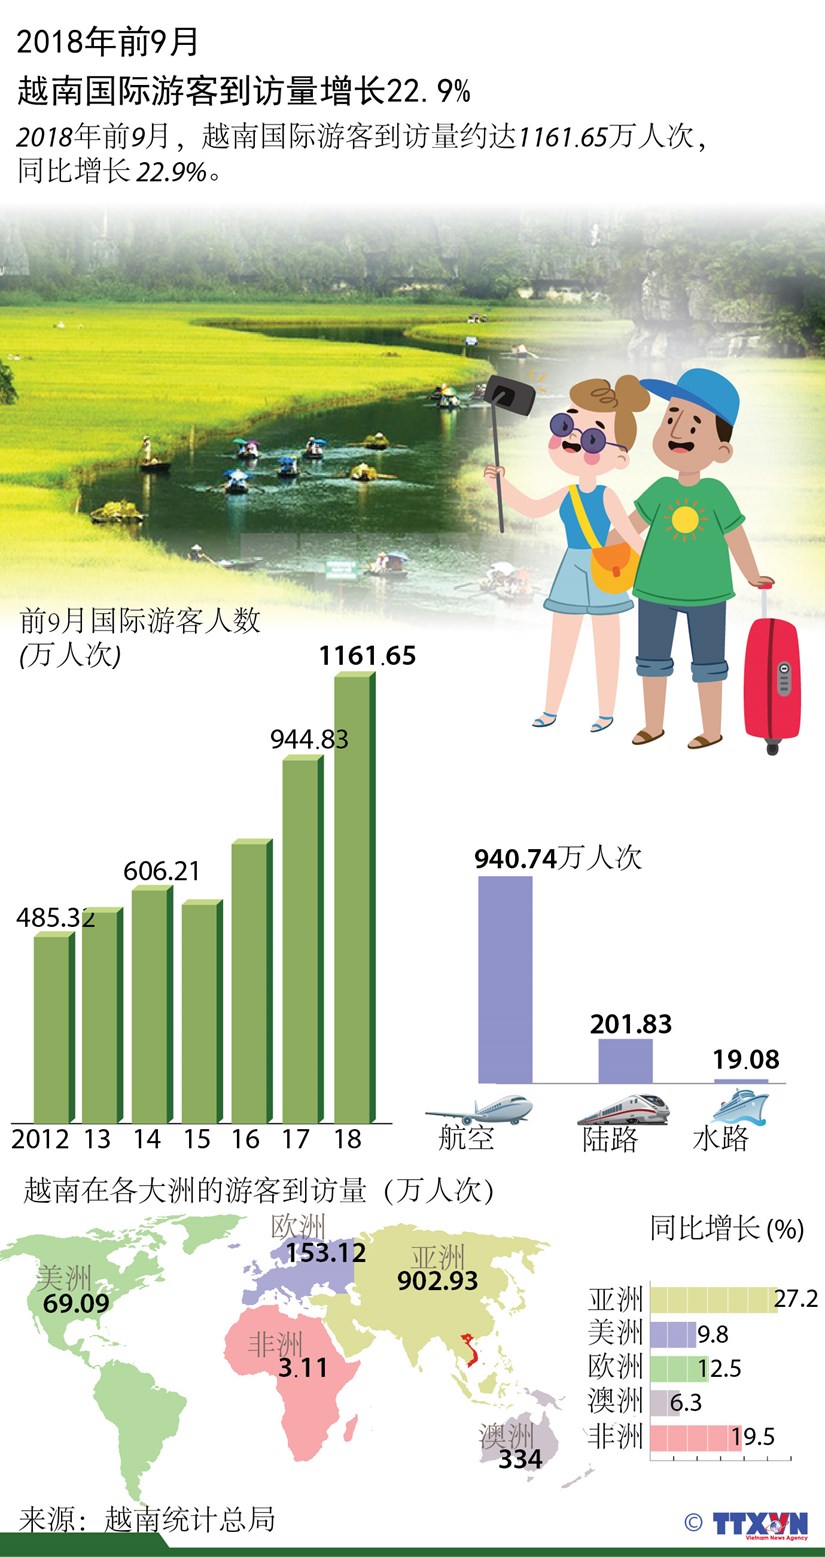 图表新闻：2018年前9月越南国际游客到访量增长22.9% hinh anh 1